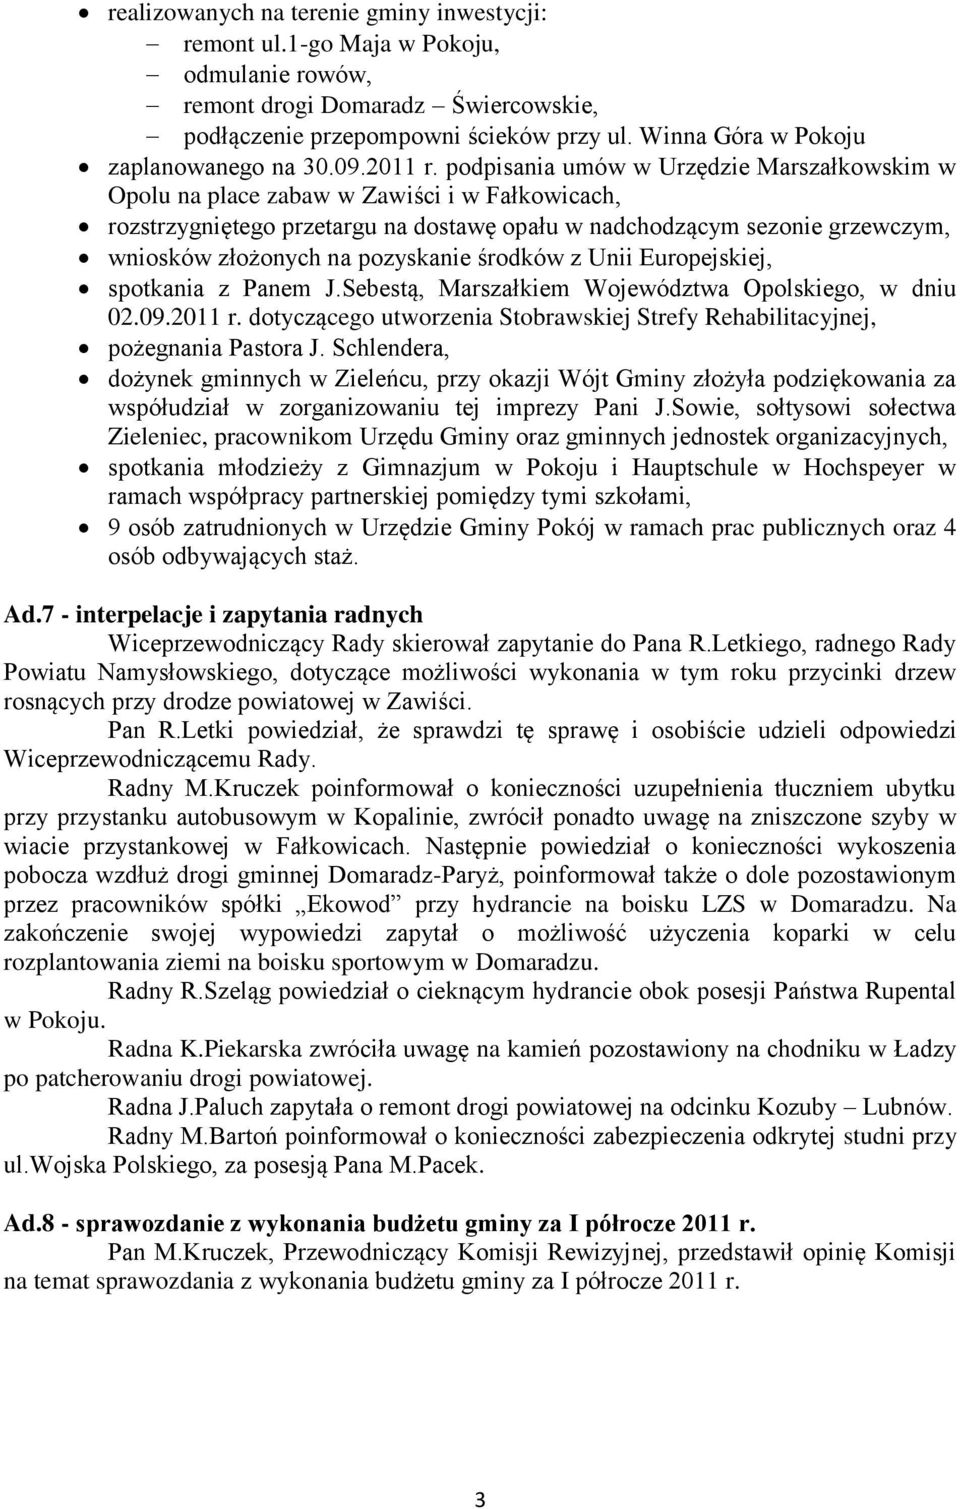 podpisania umów w Urzędzie Marszałkowskim w Opolu na place zabaw w wiści i w Fałkowicach, rozstrzygniętego przetargu na dostawę opału w nadchodzącym sezonie grzewczym, wniosków złożonych na